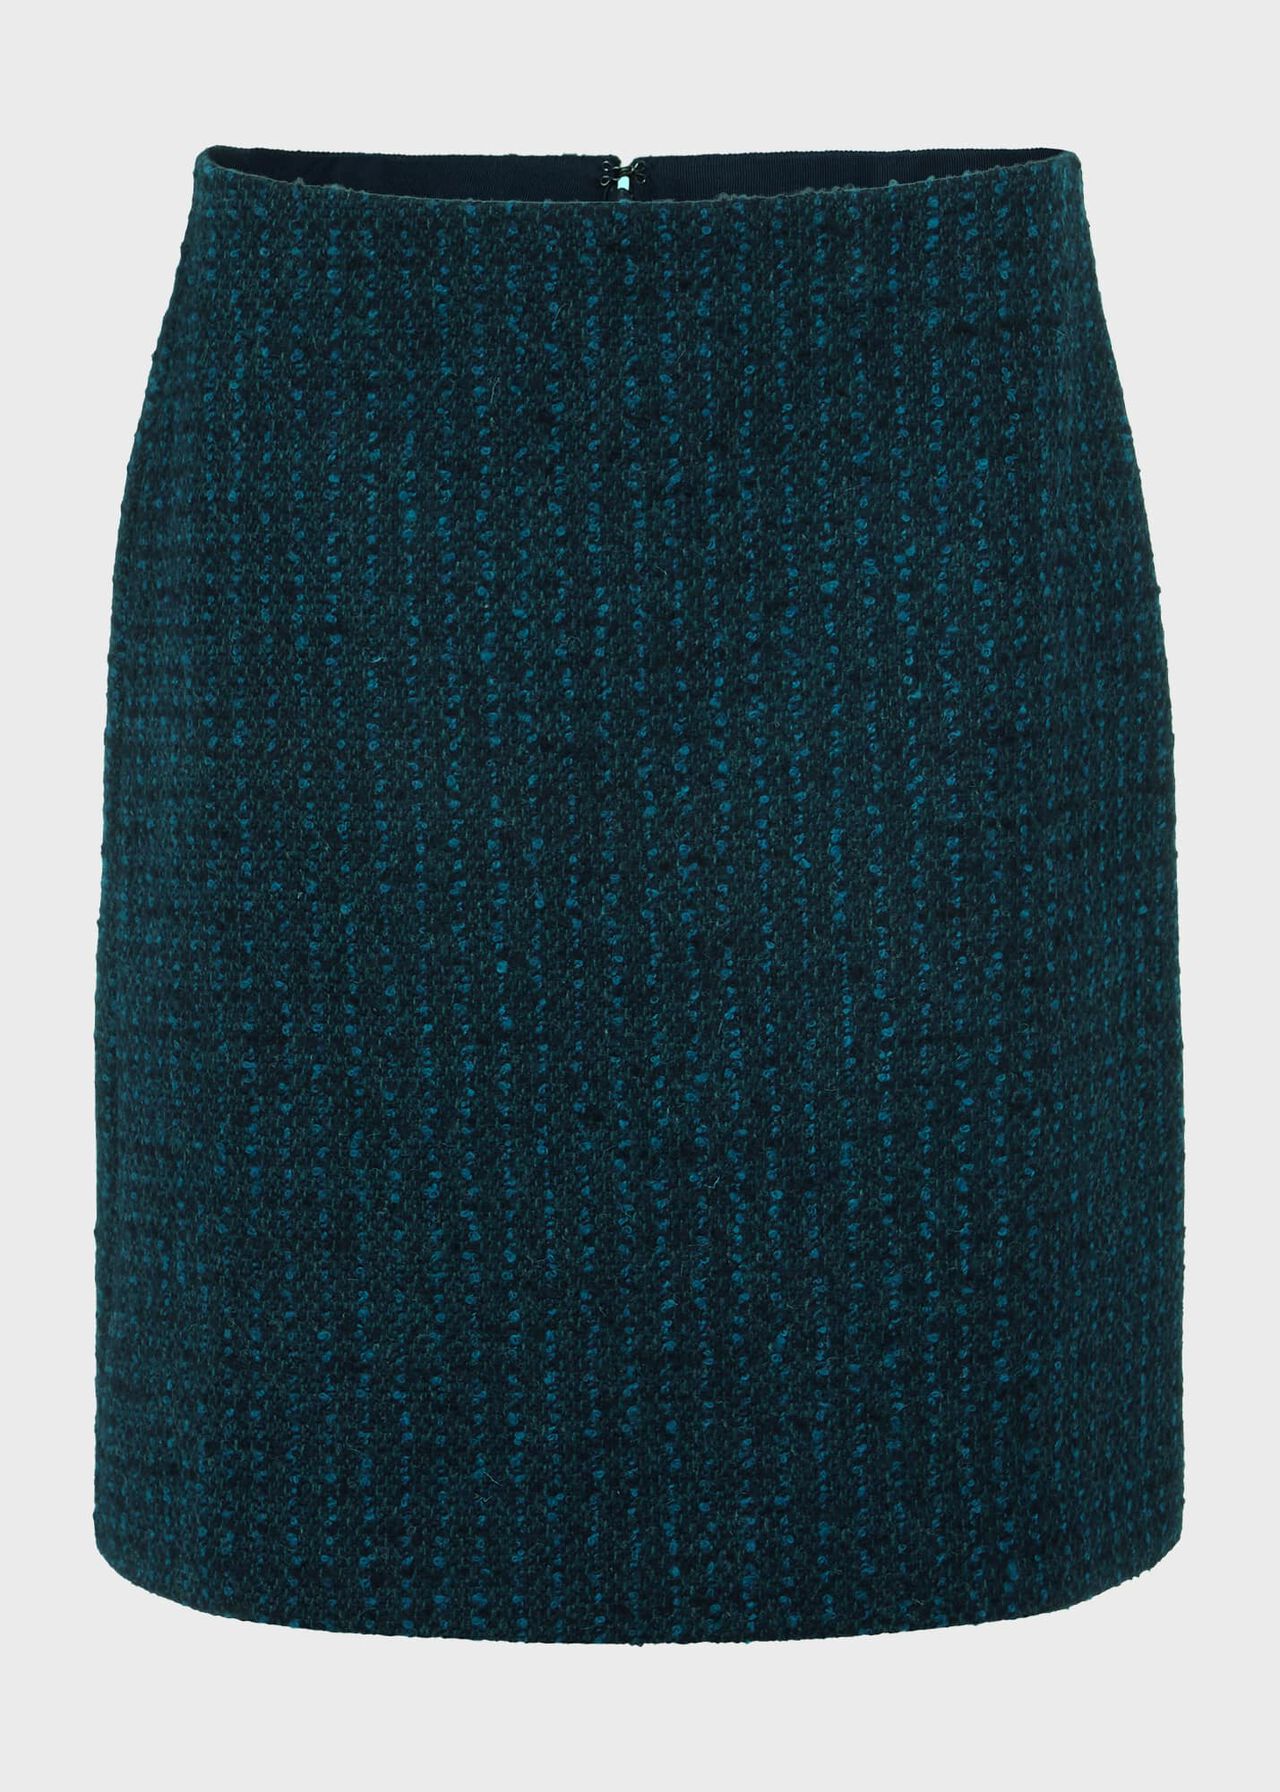 Teia Wool Skirt, Deep Teal Blue, hi-res